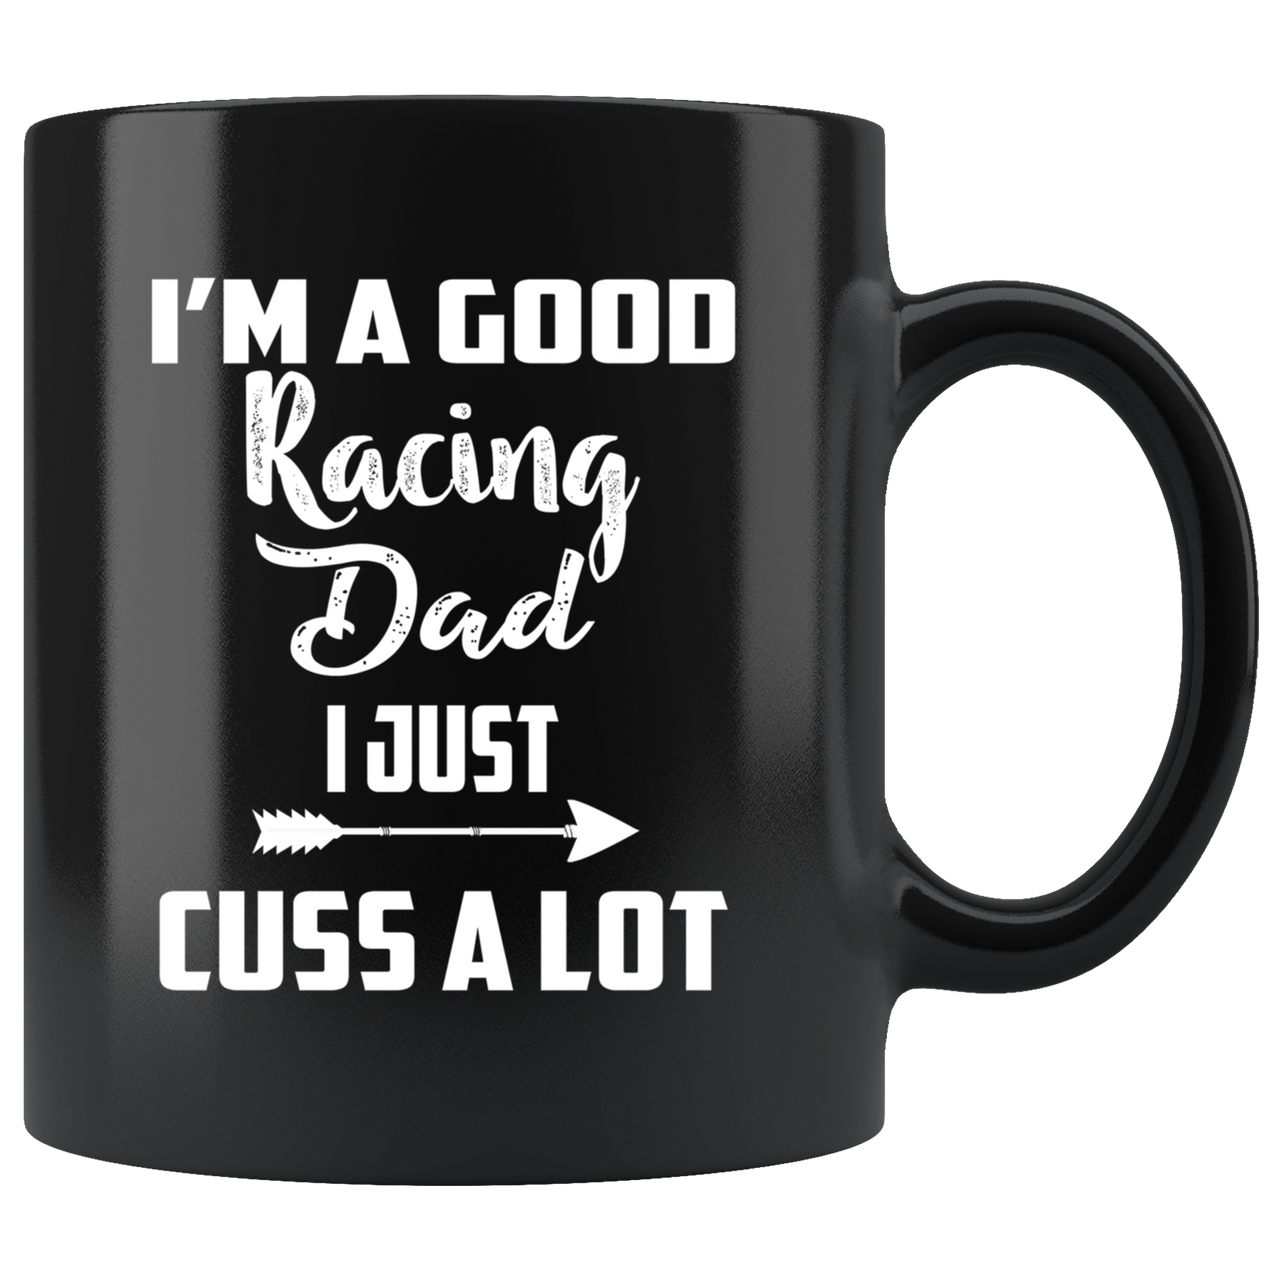 I'm A Good Racing Dad I Just Cuss A Lot Mug!